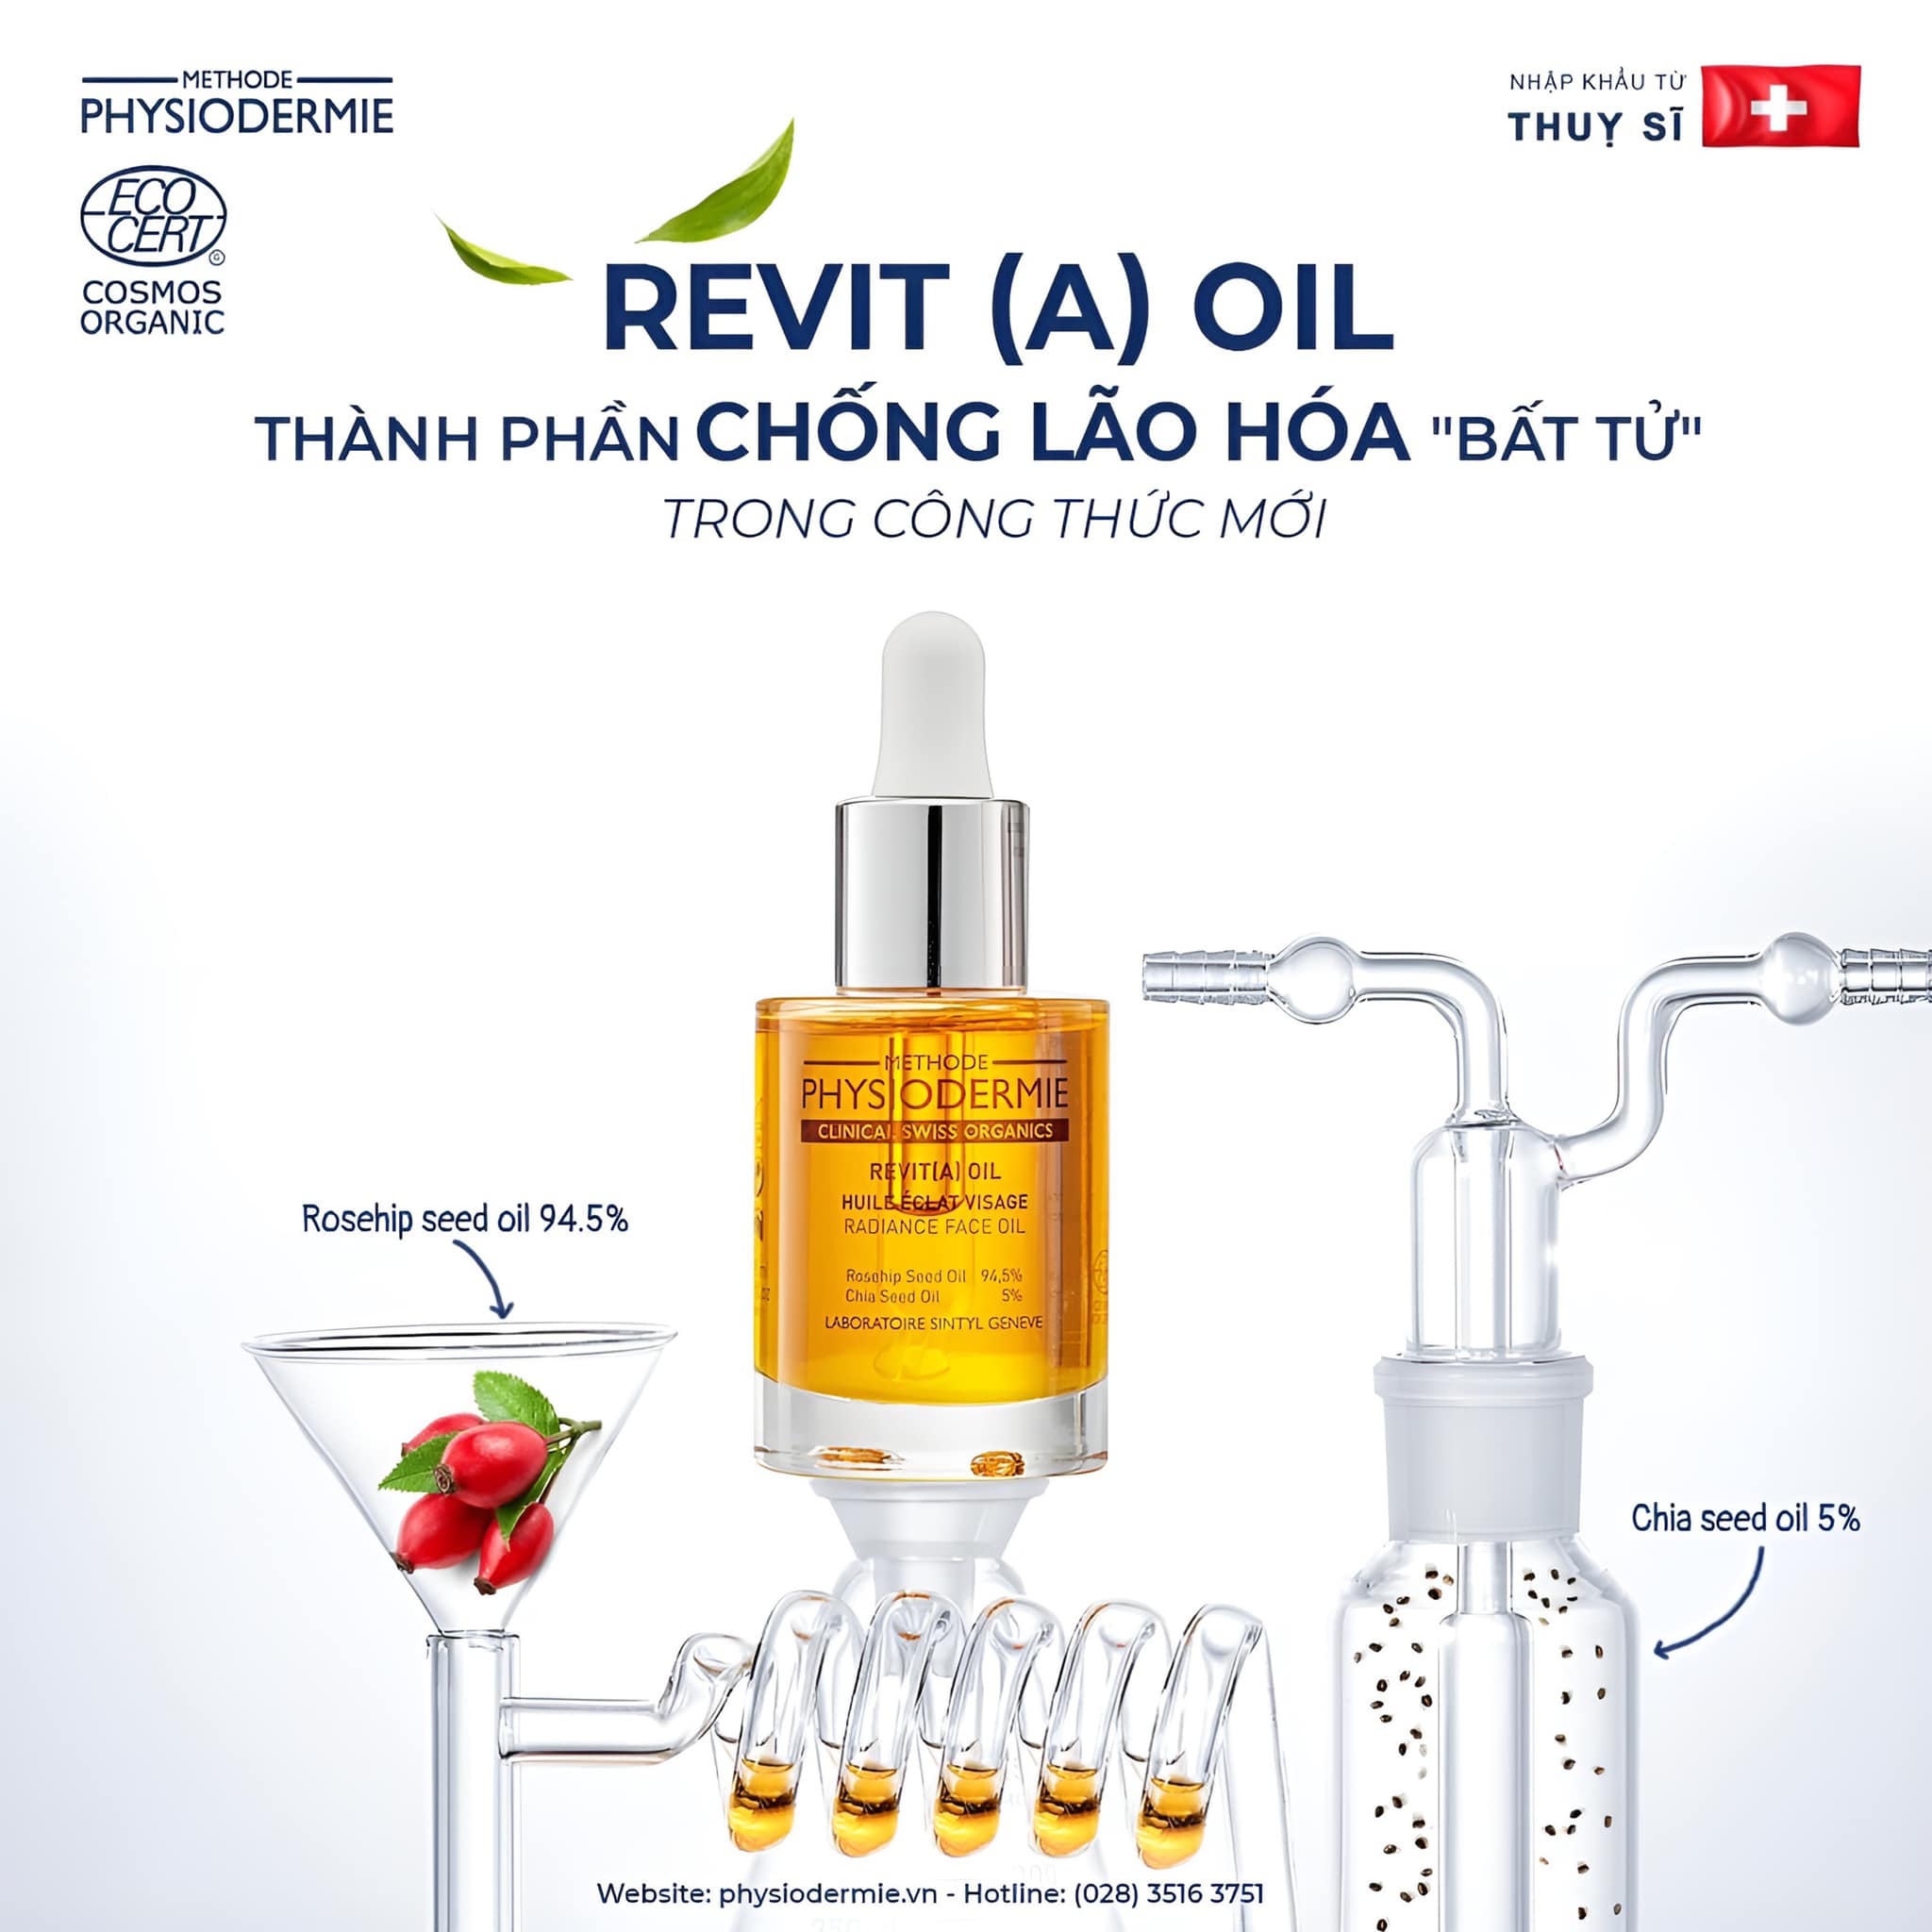 Dầu dưỡng Revita(A) Oil với kết cấu mỏng nhẹ, thấm nhanh sẽ không gây bít tắc lỗ chân lông